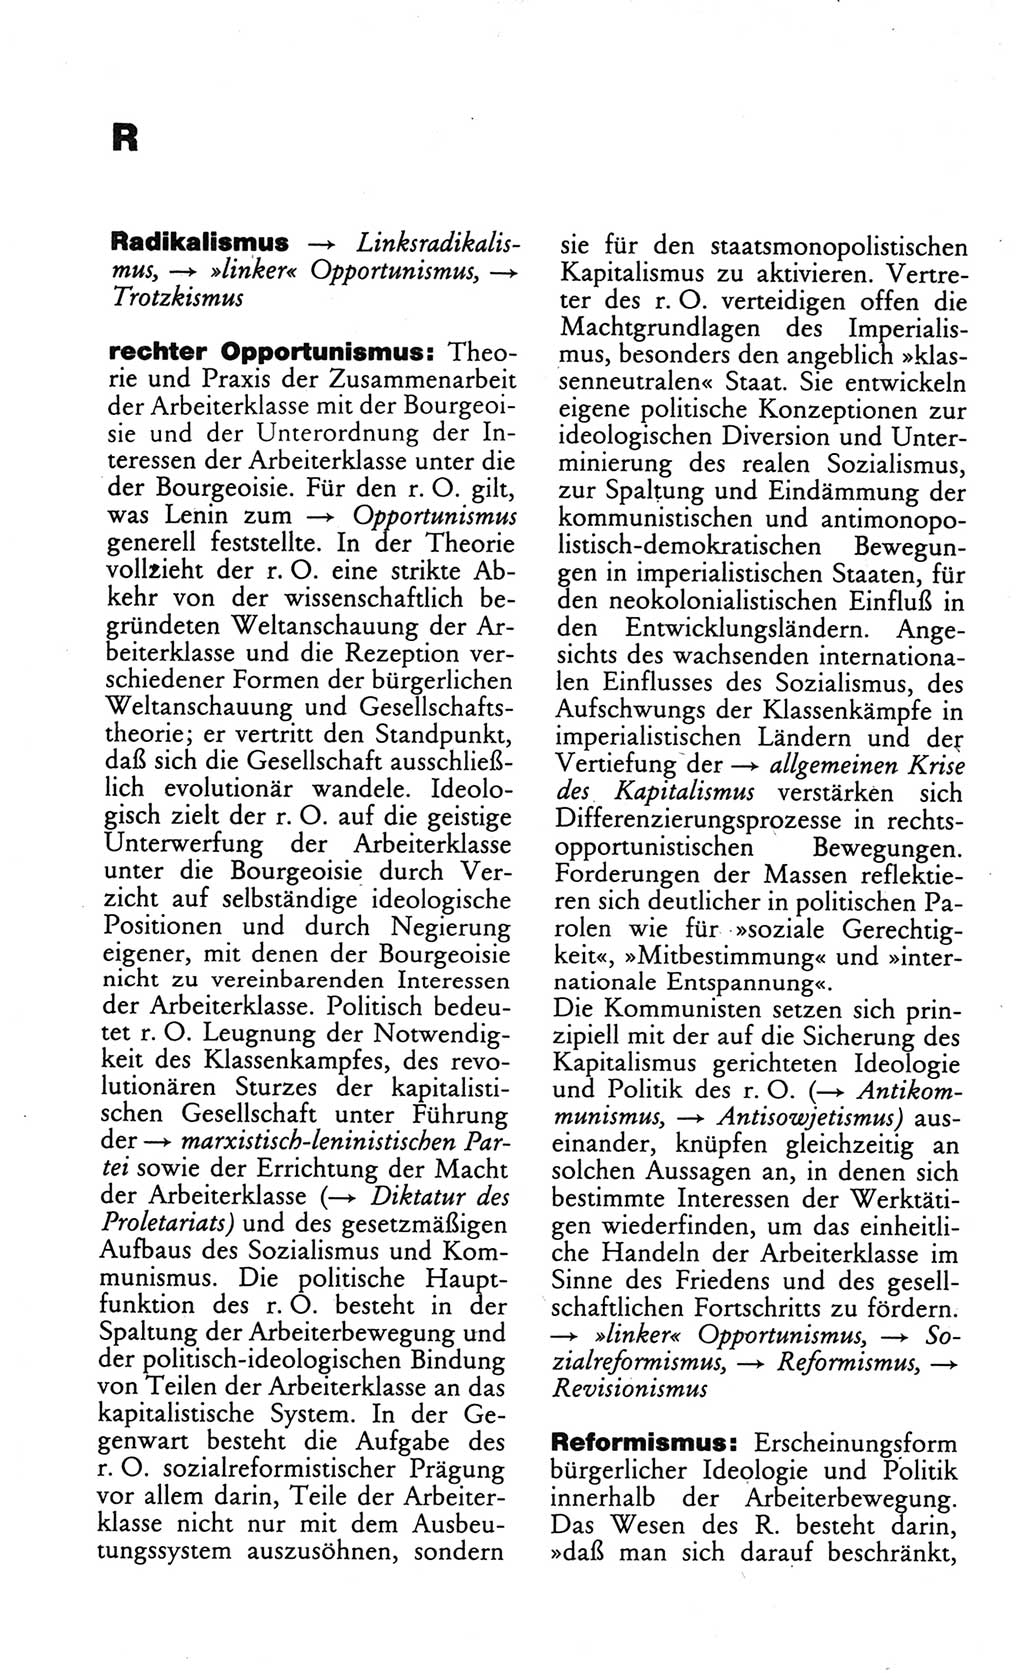 Wörterbuch des wissenschaftlichen Kommunismus [Deutsche Demokratische Republik (DDR)] 1984, Seite 314 (Wb. wiss. Komm. DDR 1984, S. 314)